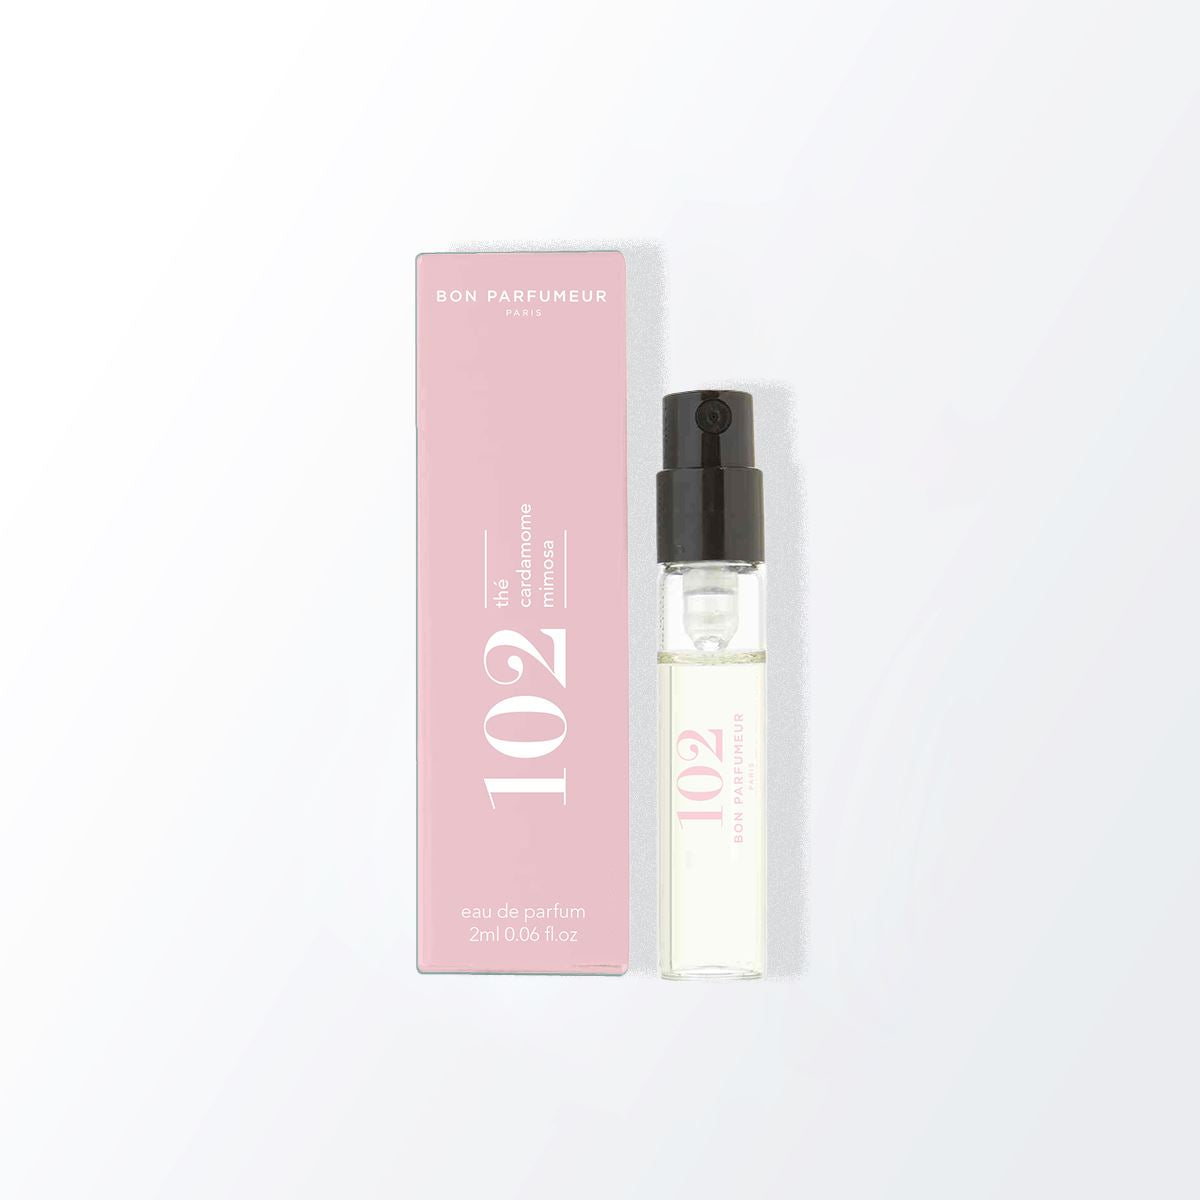 Spray parfumé payant Bon Parfumeur 102: Thé, cardamome, mimosa 